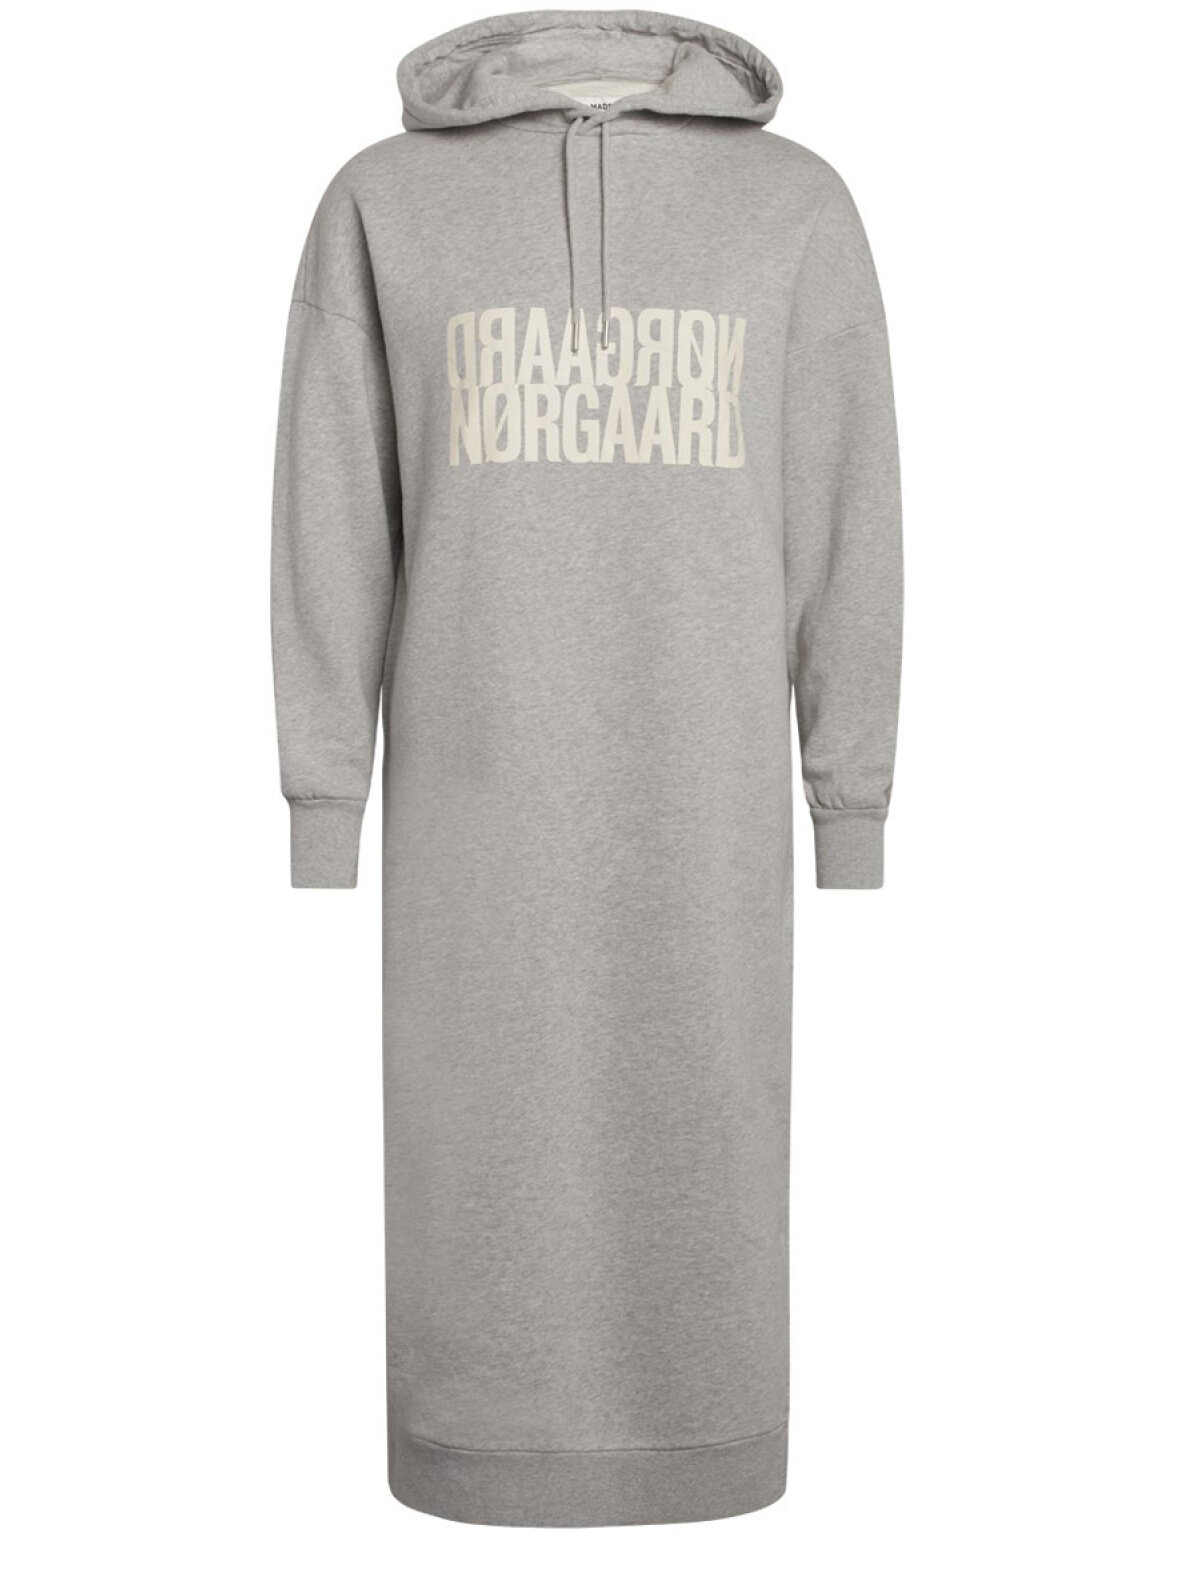 A'POKE - Mads Nørgaard Daffi Sweatdress Light Grey Melange - kjole